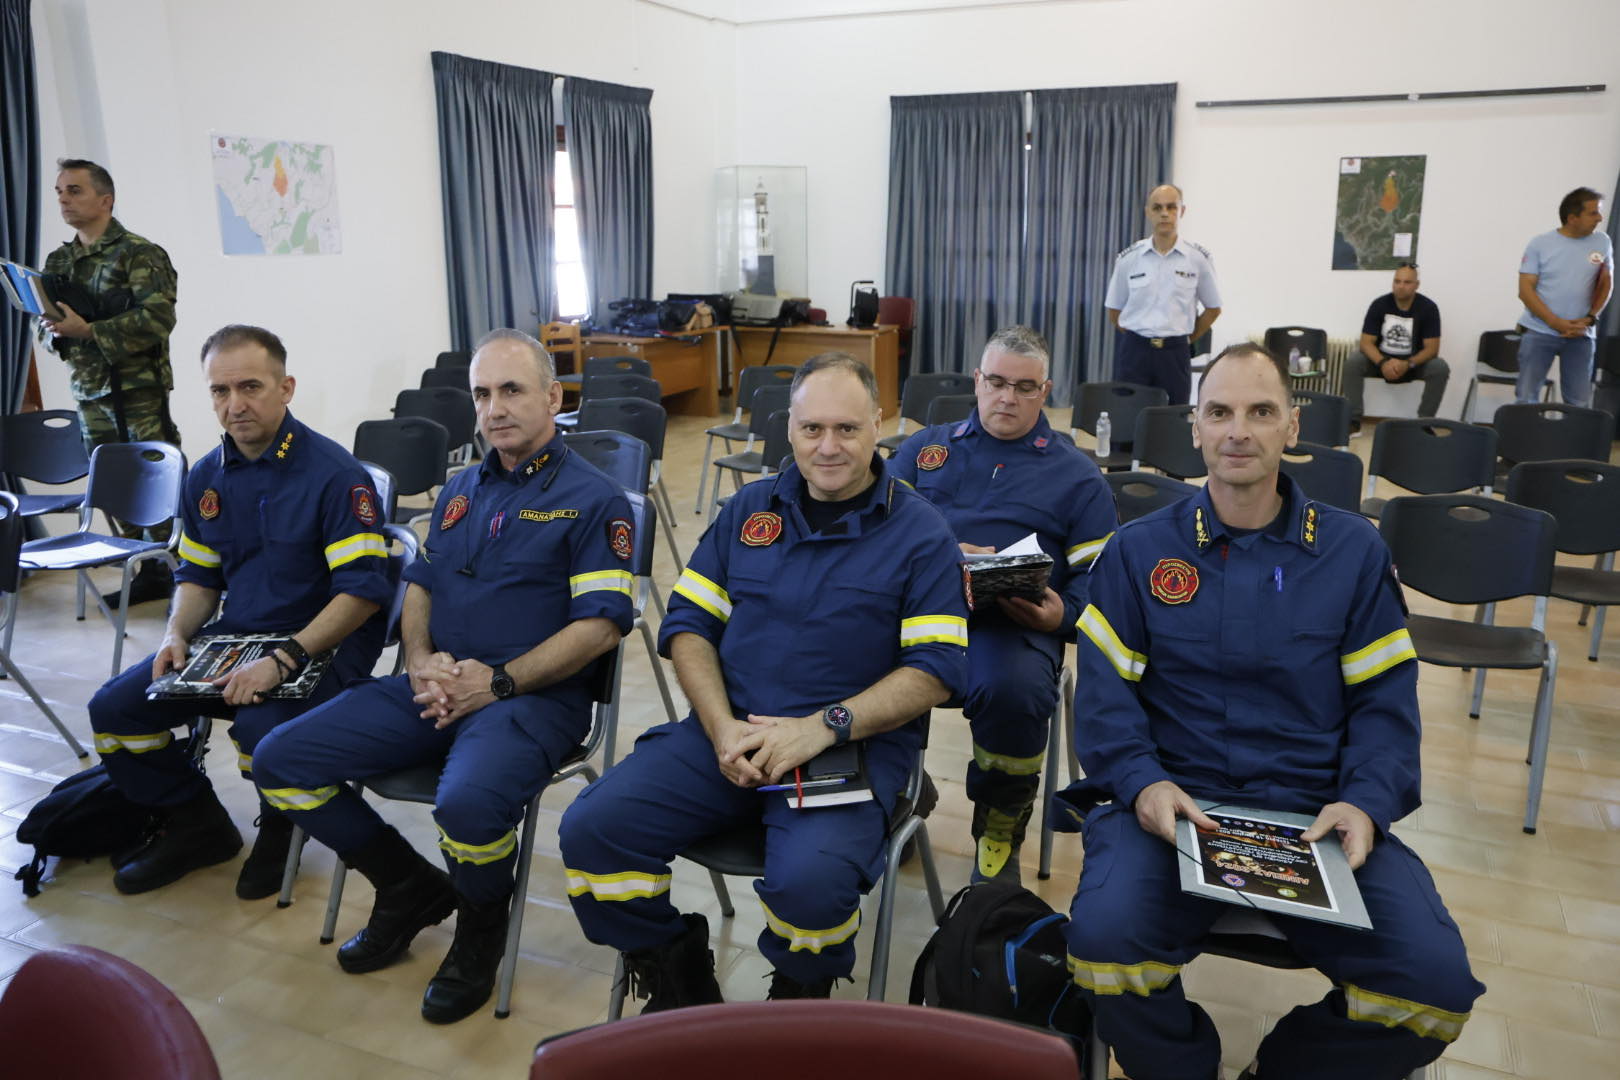 Δήμος Νοτίου Πηλίου: Επιτυχής η άσκηση απομάκρυνσης πολιτών σε περίπτωση πυρκαγιάς